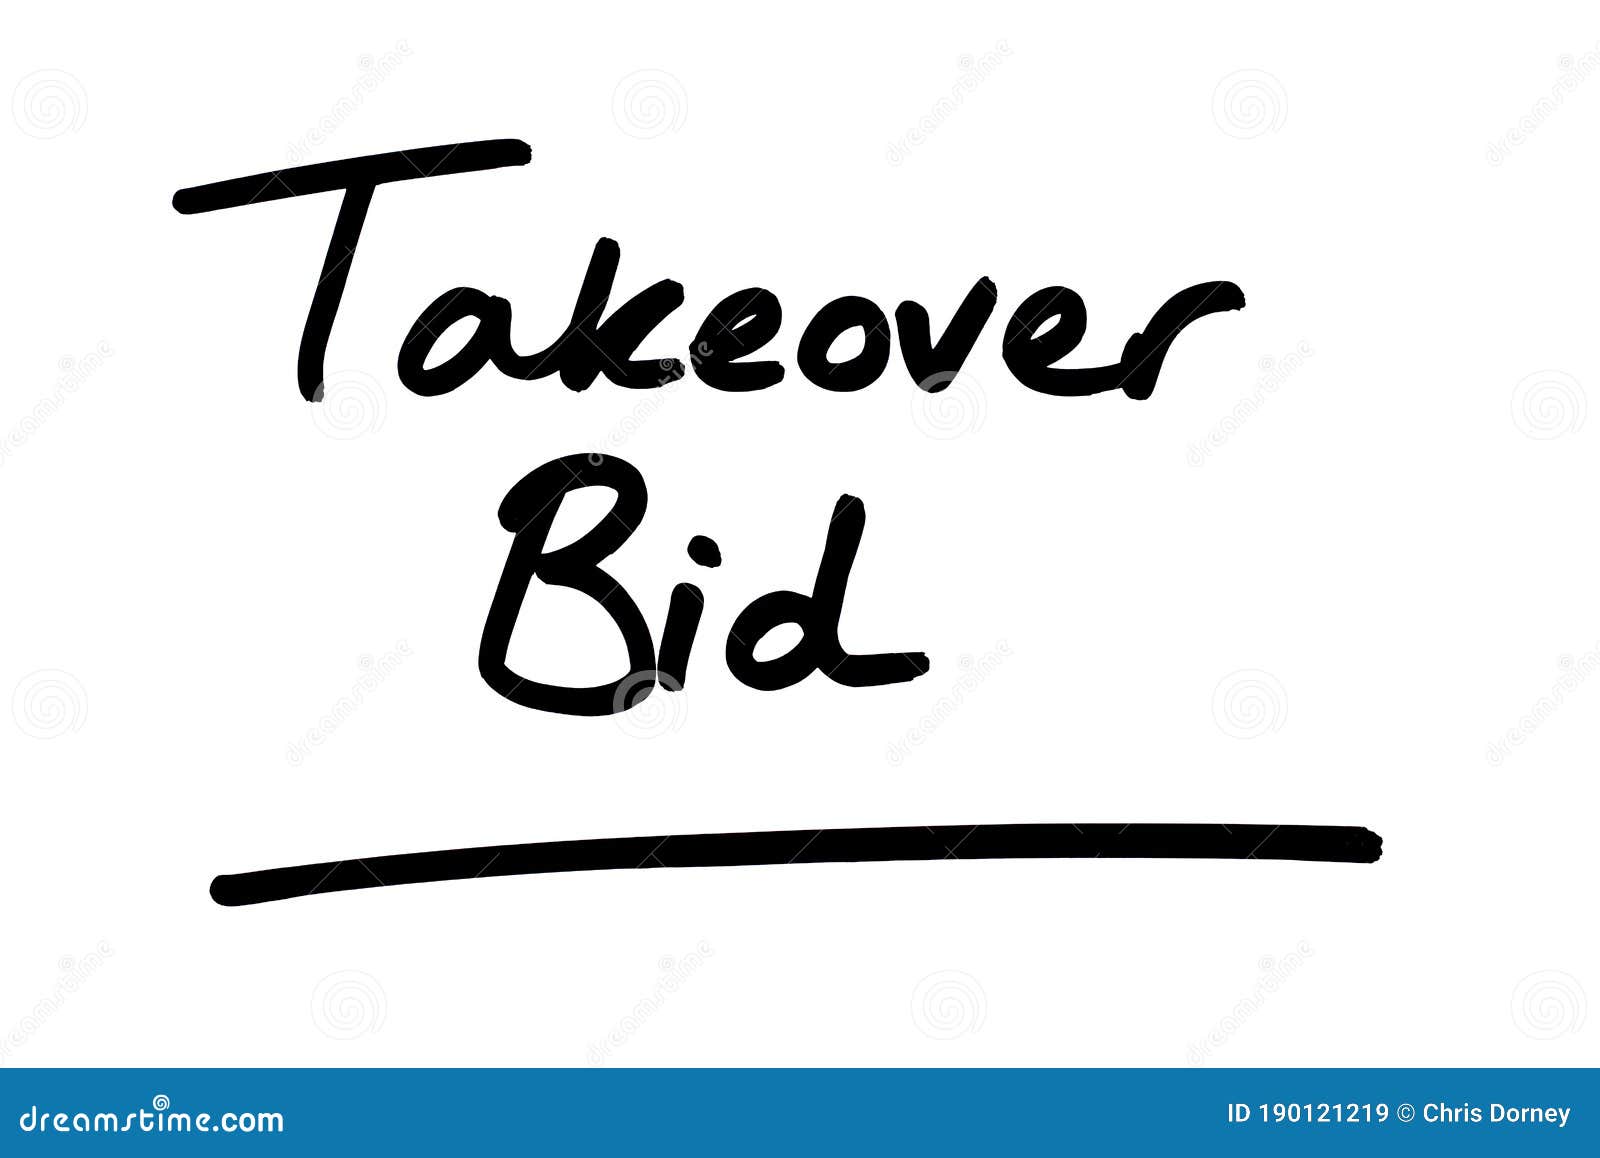 takeover bid